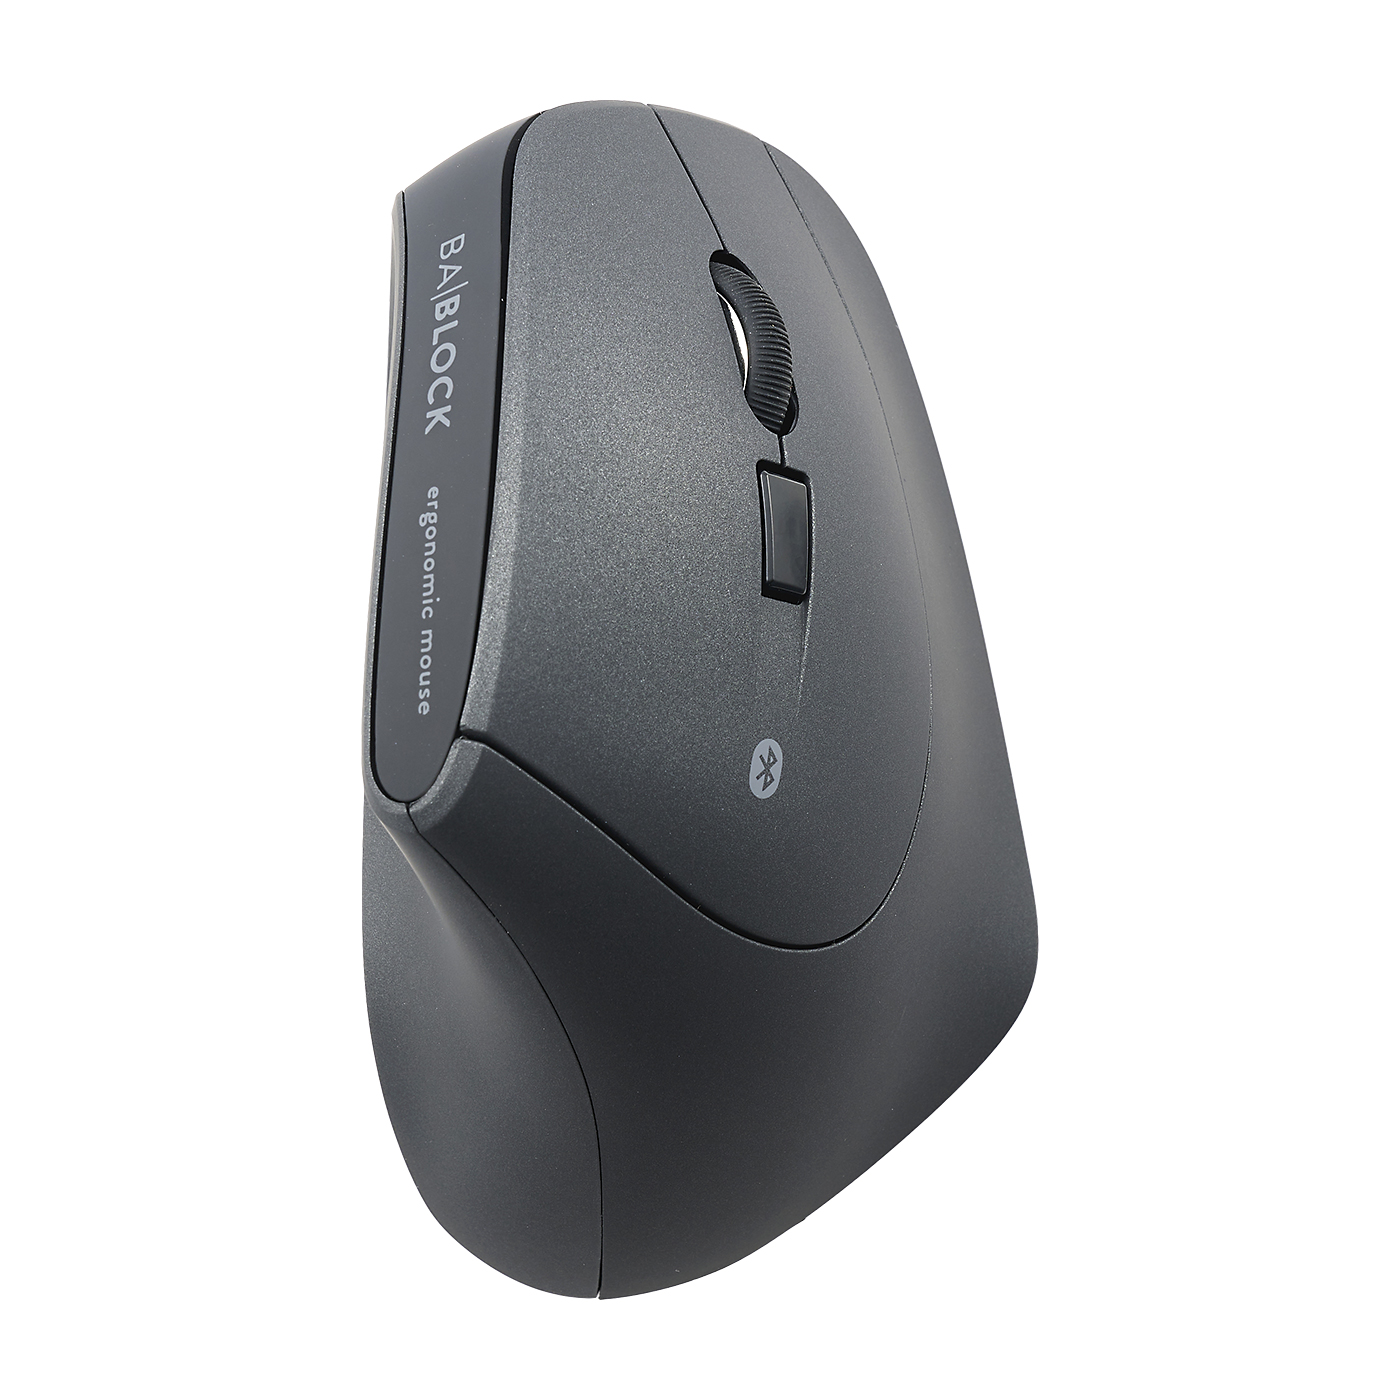 マウス Bluetooth 無線 エルゴノミクス ワイヤレスマウス エルゴマウス 充電式 マルチペアリング 静音ボタン ブラック ブルートゥース 縦型 400-MABT127